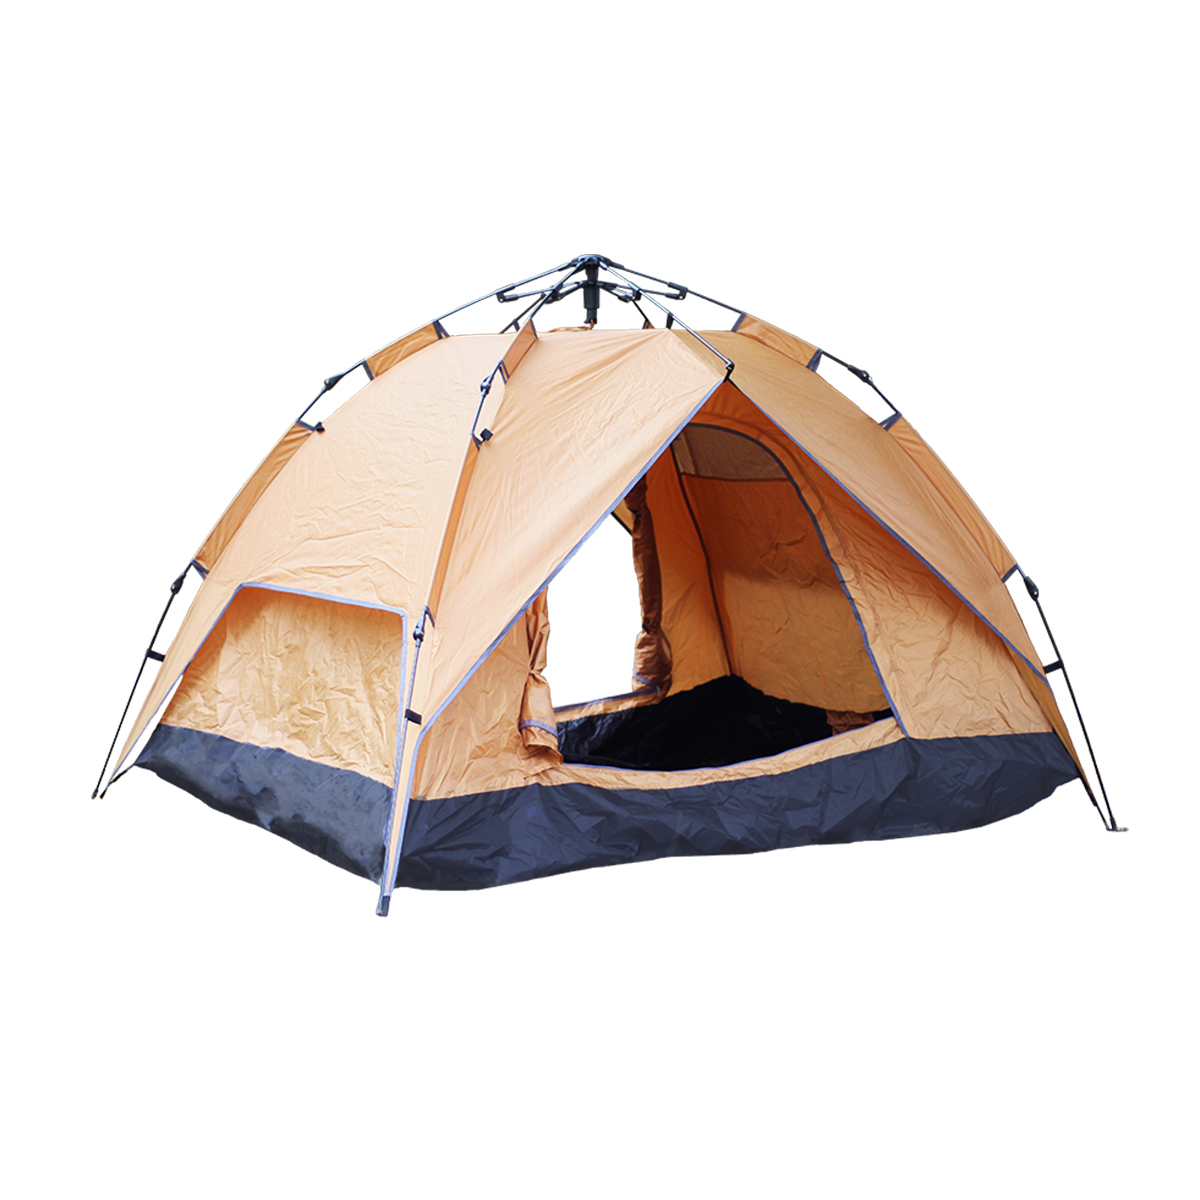 テント ポップアップテント ワンタッチテント 4人 アウトドア キャンプ用品 2WAY ソロテント ツーリング 防水 サンシェード ドーム型テント  MERMONT